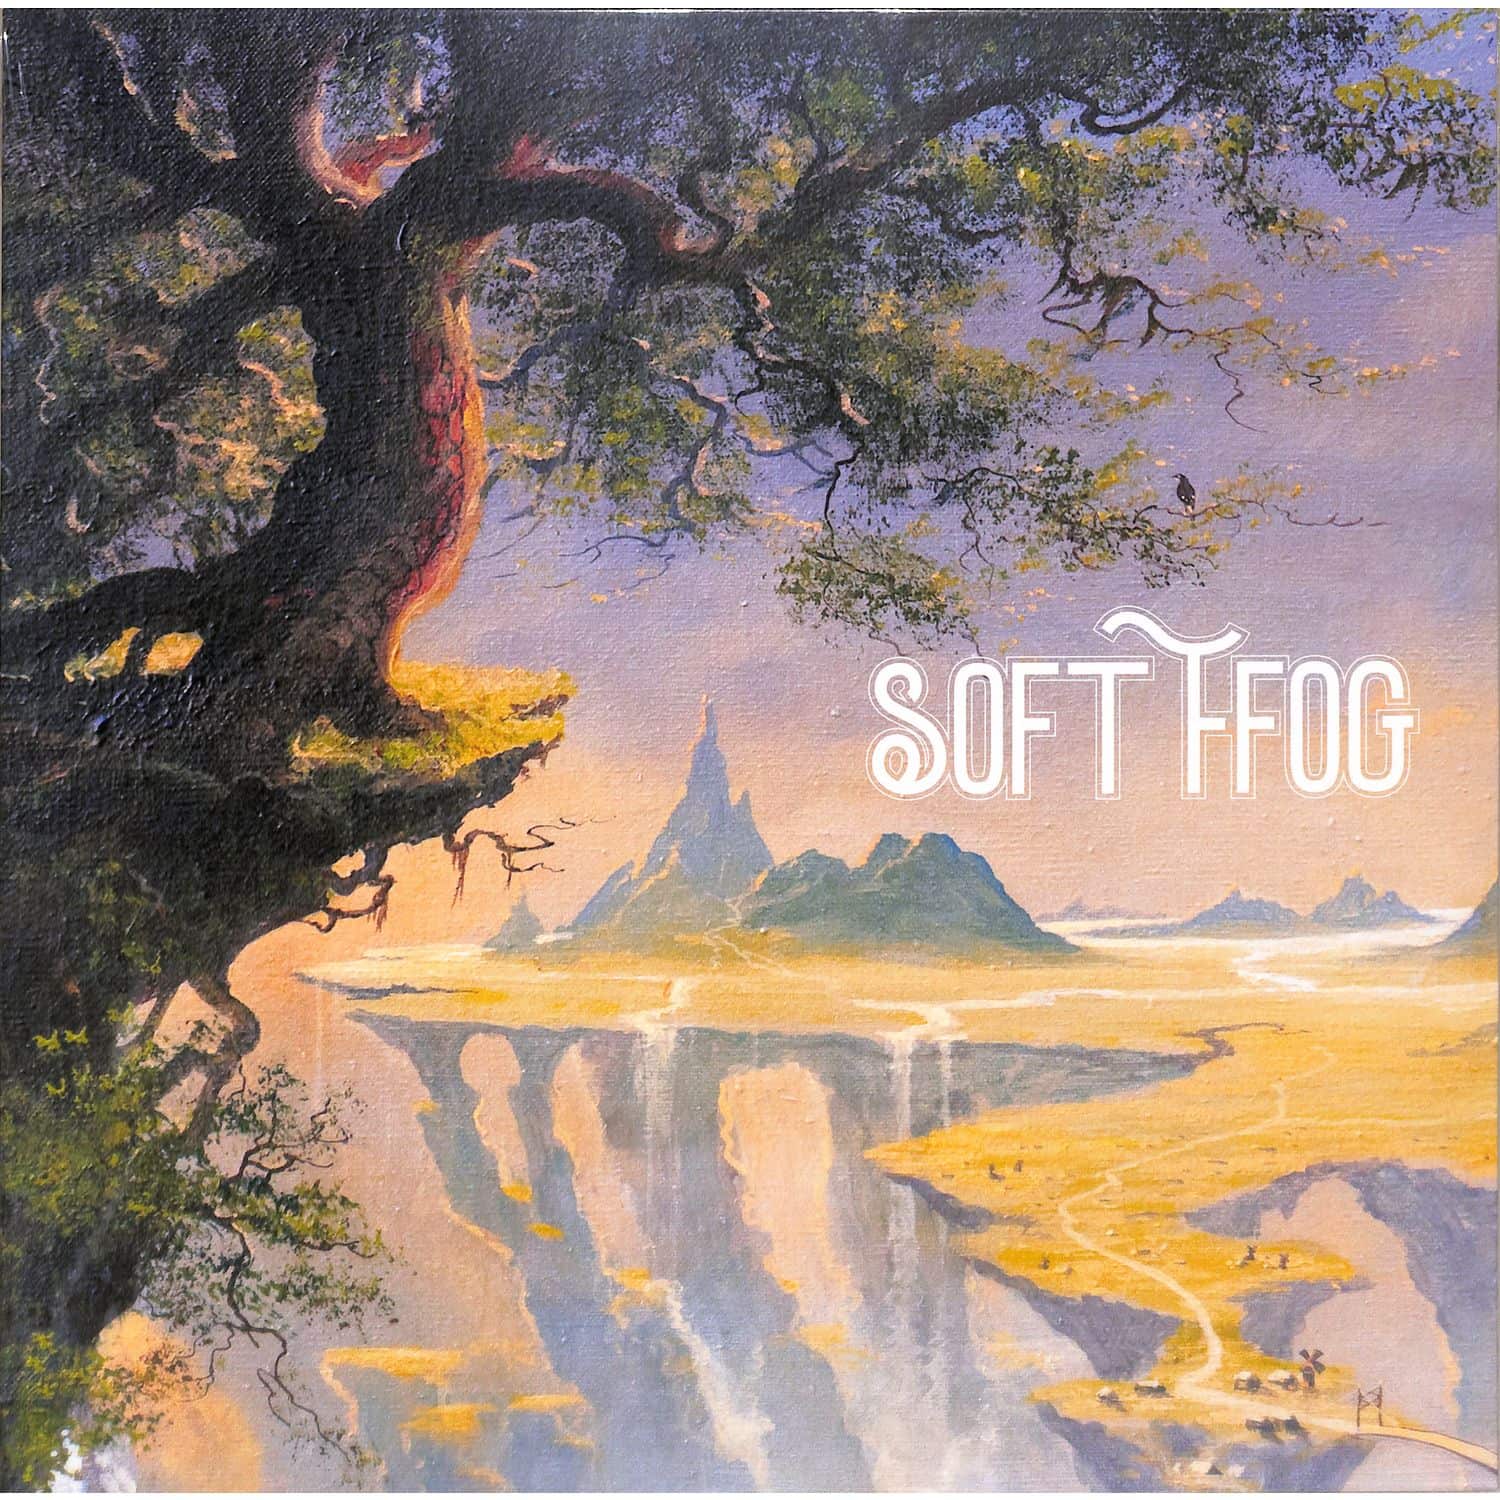 Soft Ffog - SOFT FFOG 